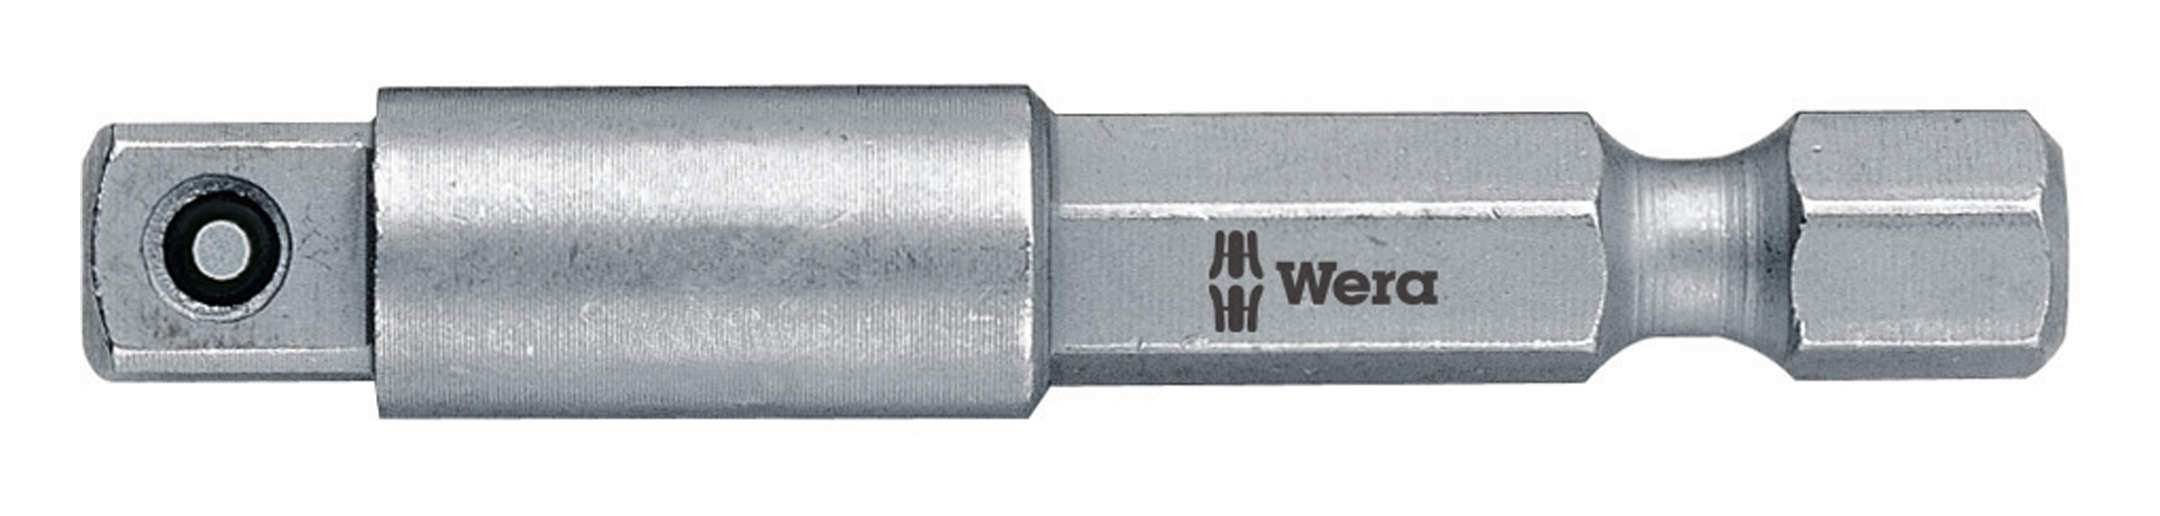 Wera Steckschlüssel, Adapter 1/4" für 1/4" Einsatz 50 mm